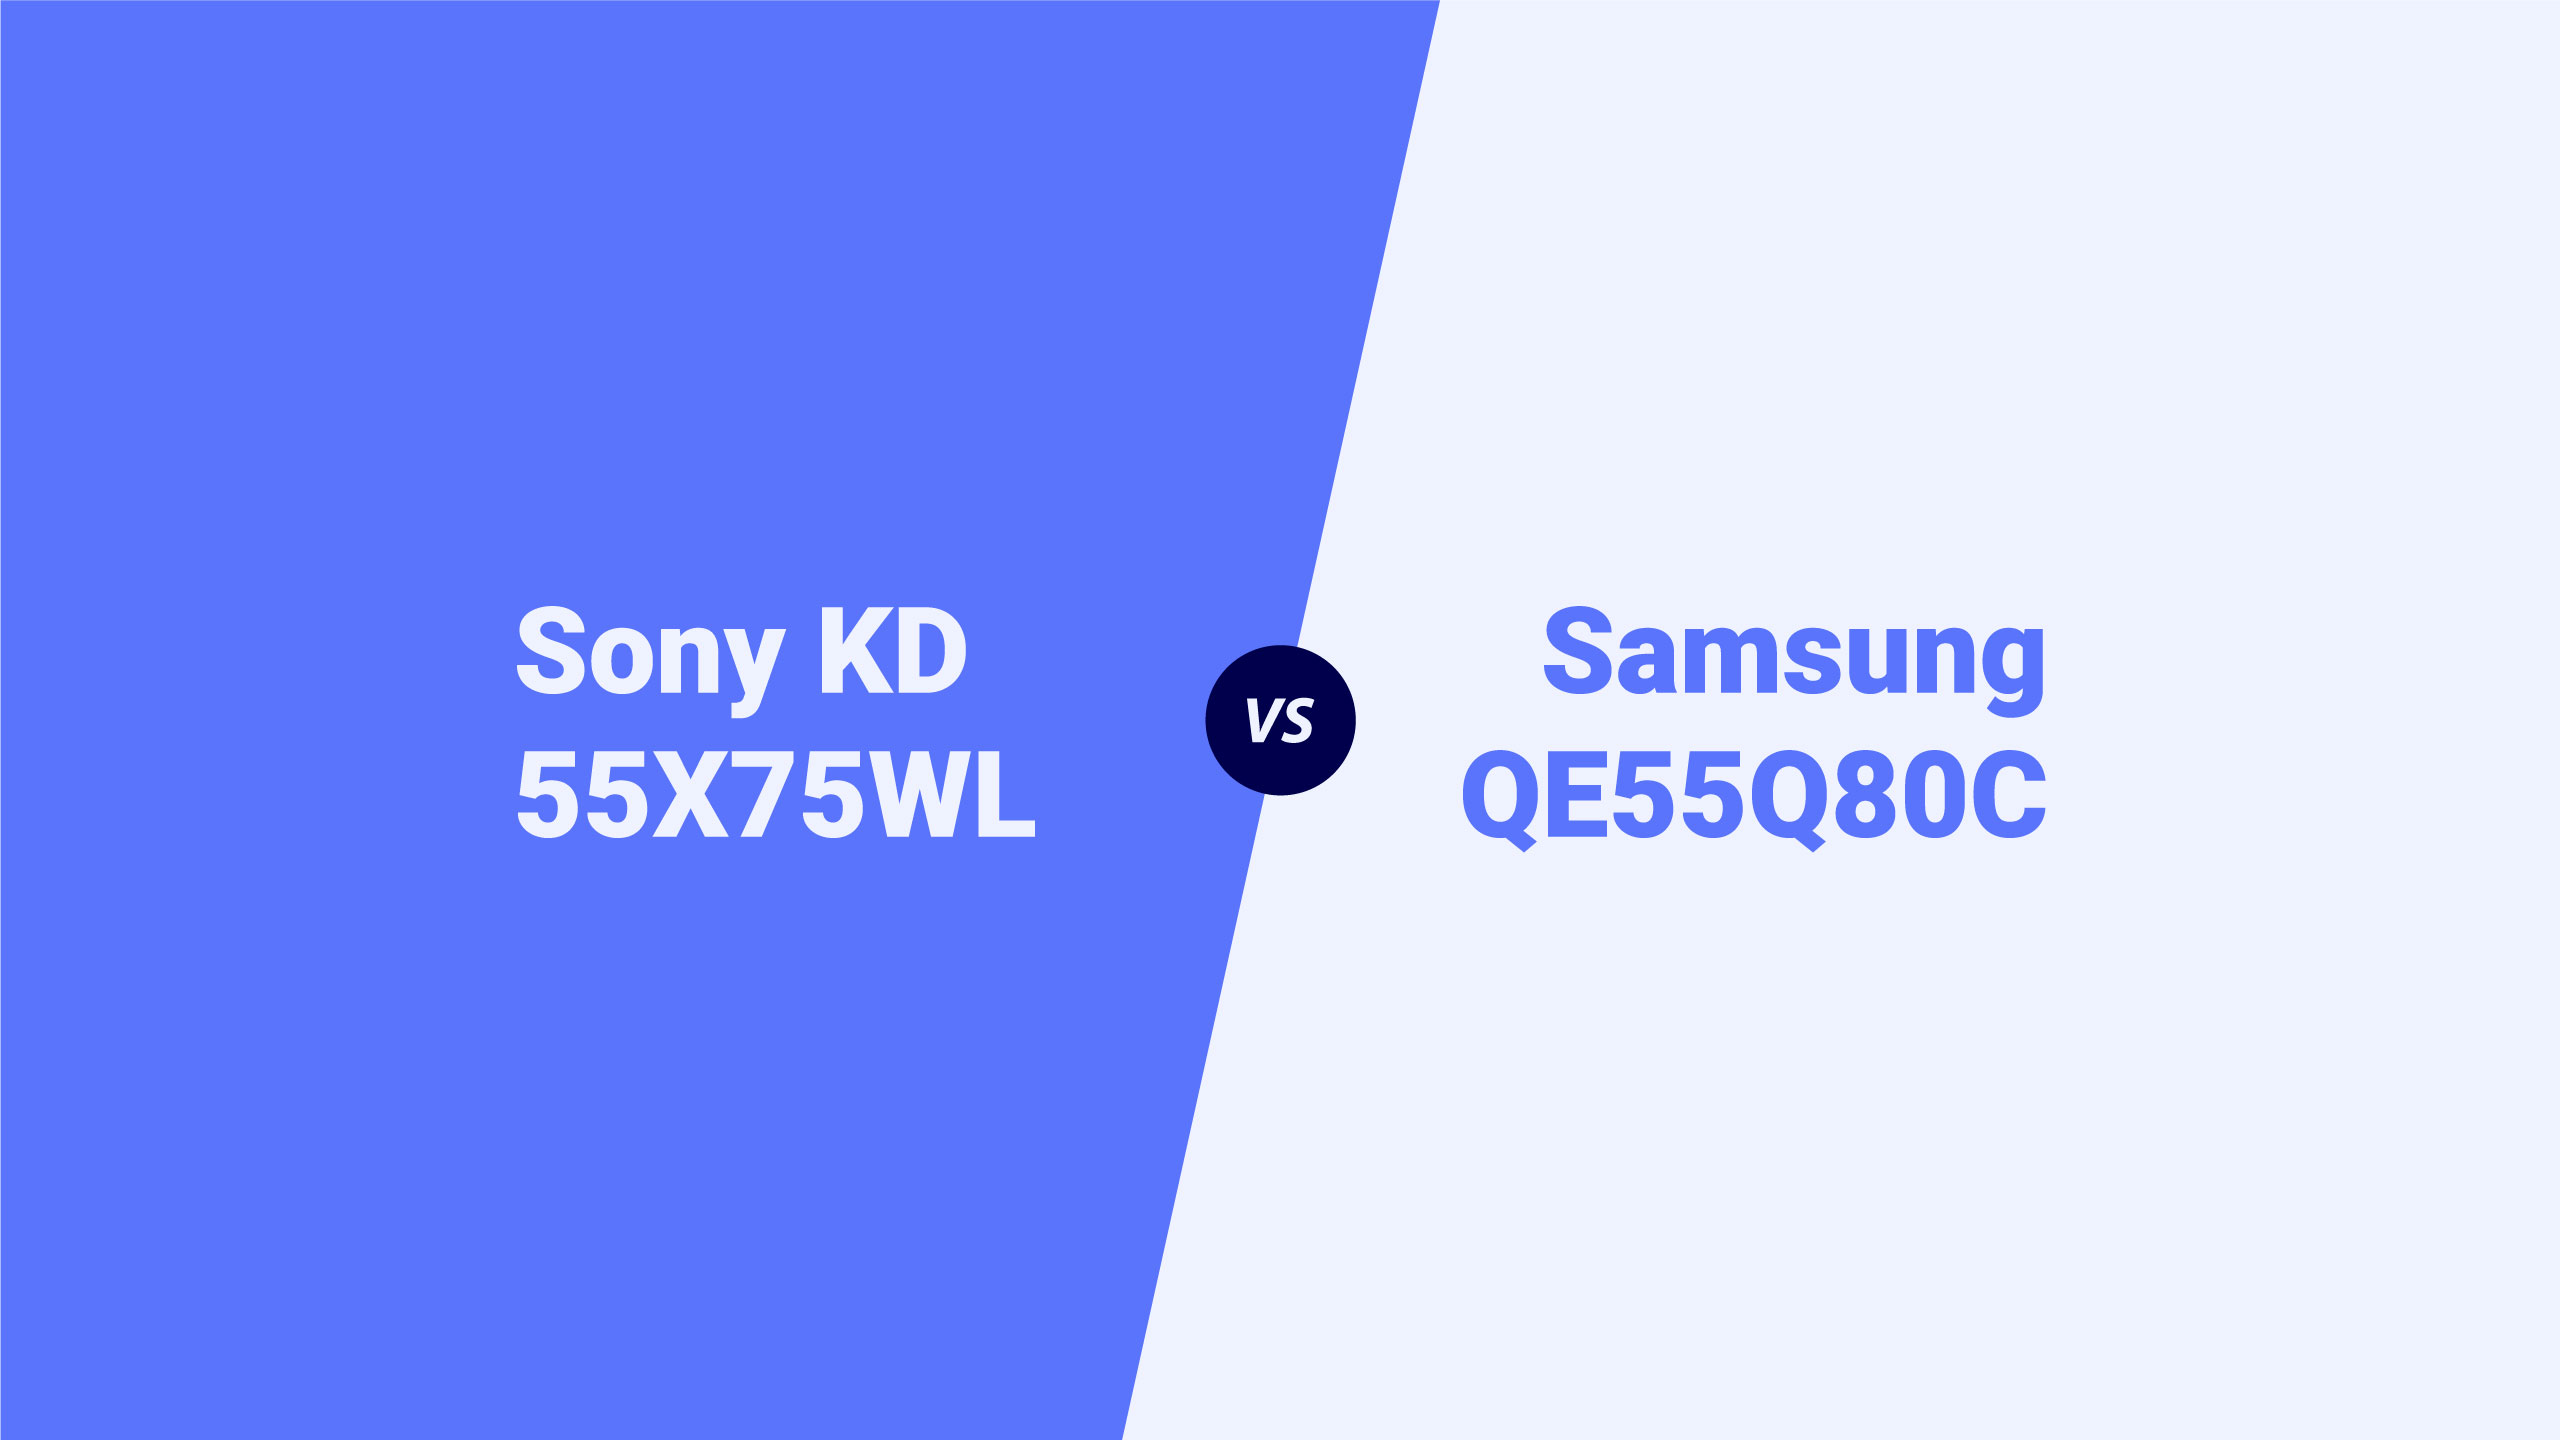 Sony KD 55X75WL vs Samsung QE55Q80C